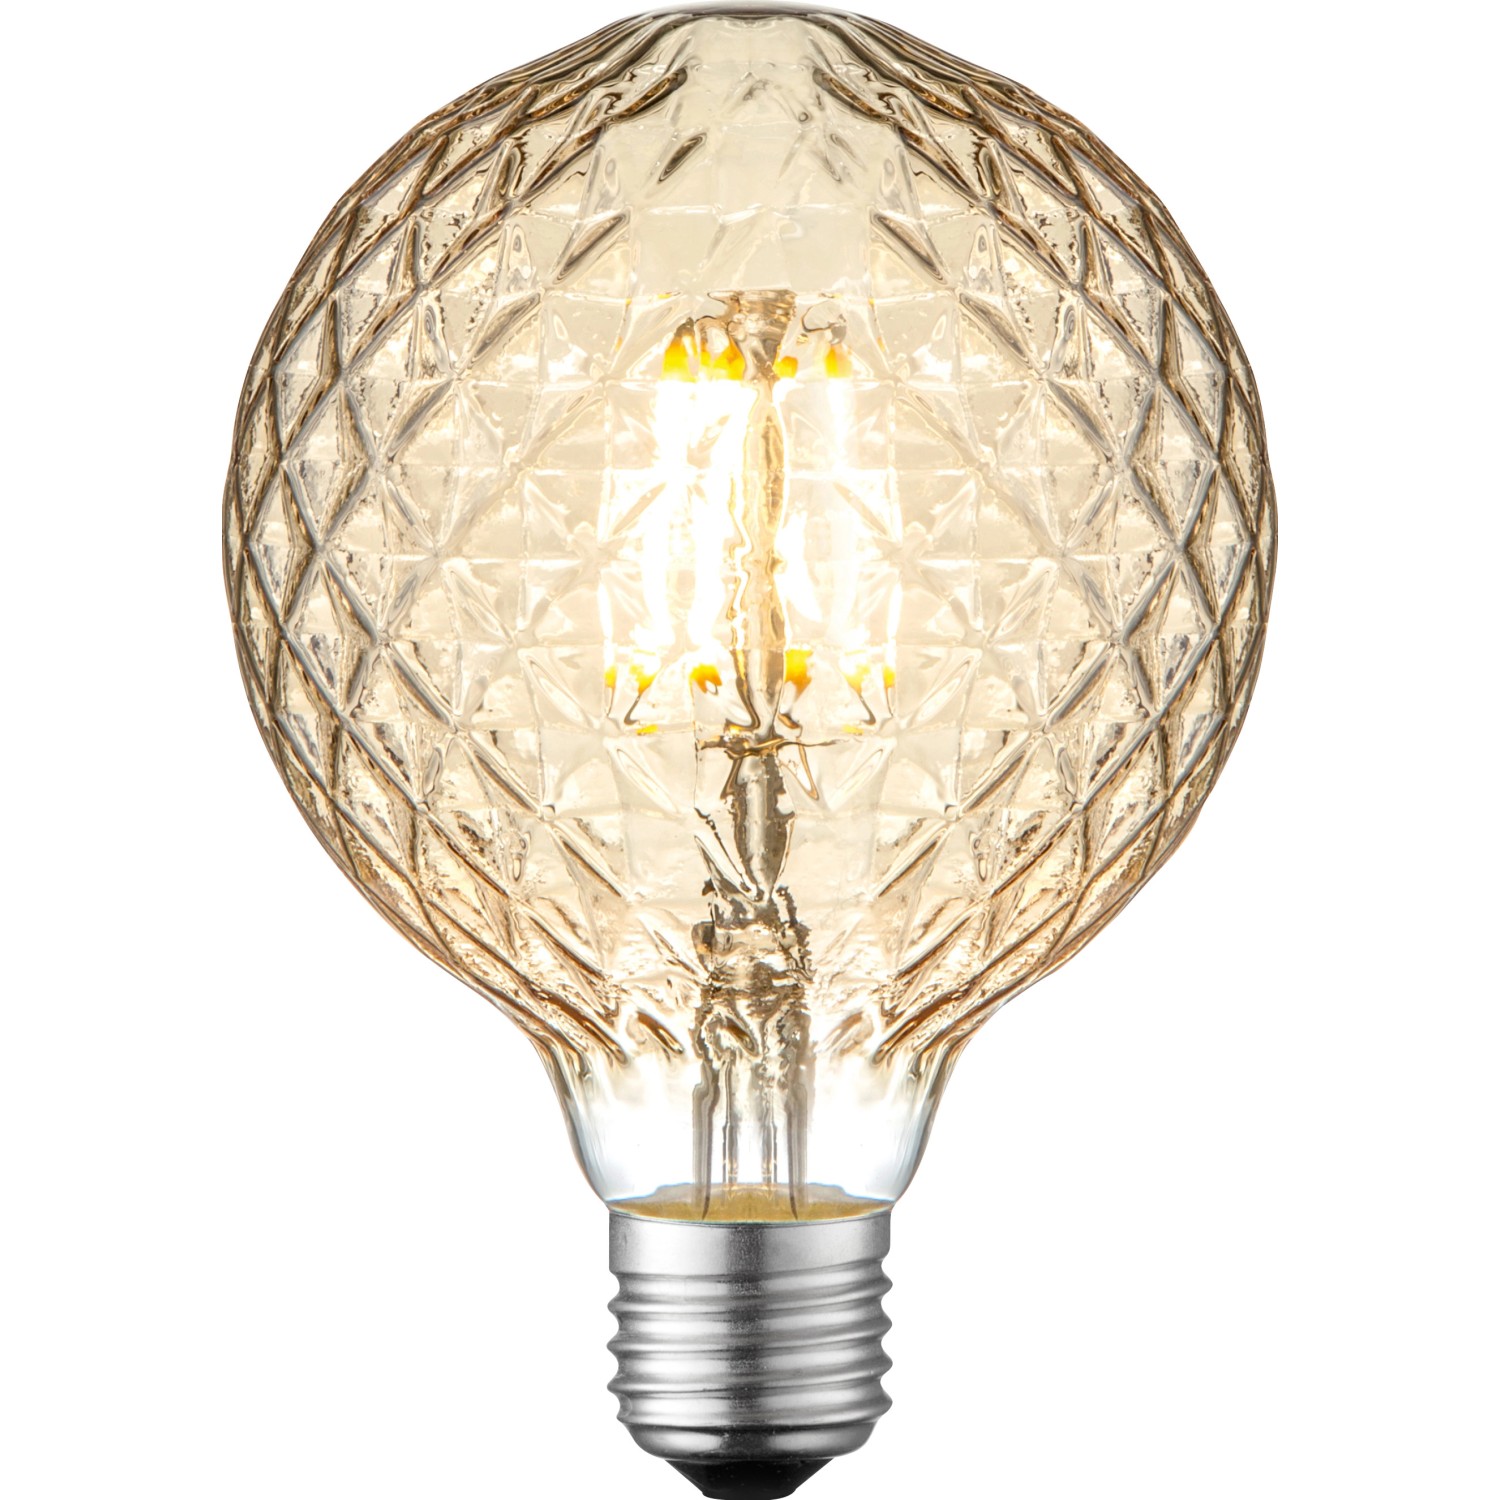 LeuchtenDirekt by Neuhaus LED-Filament-Leuchtmittel Globeform E27 / 4 W (330 lm) Warmweiß